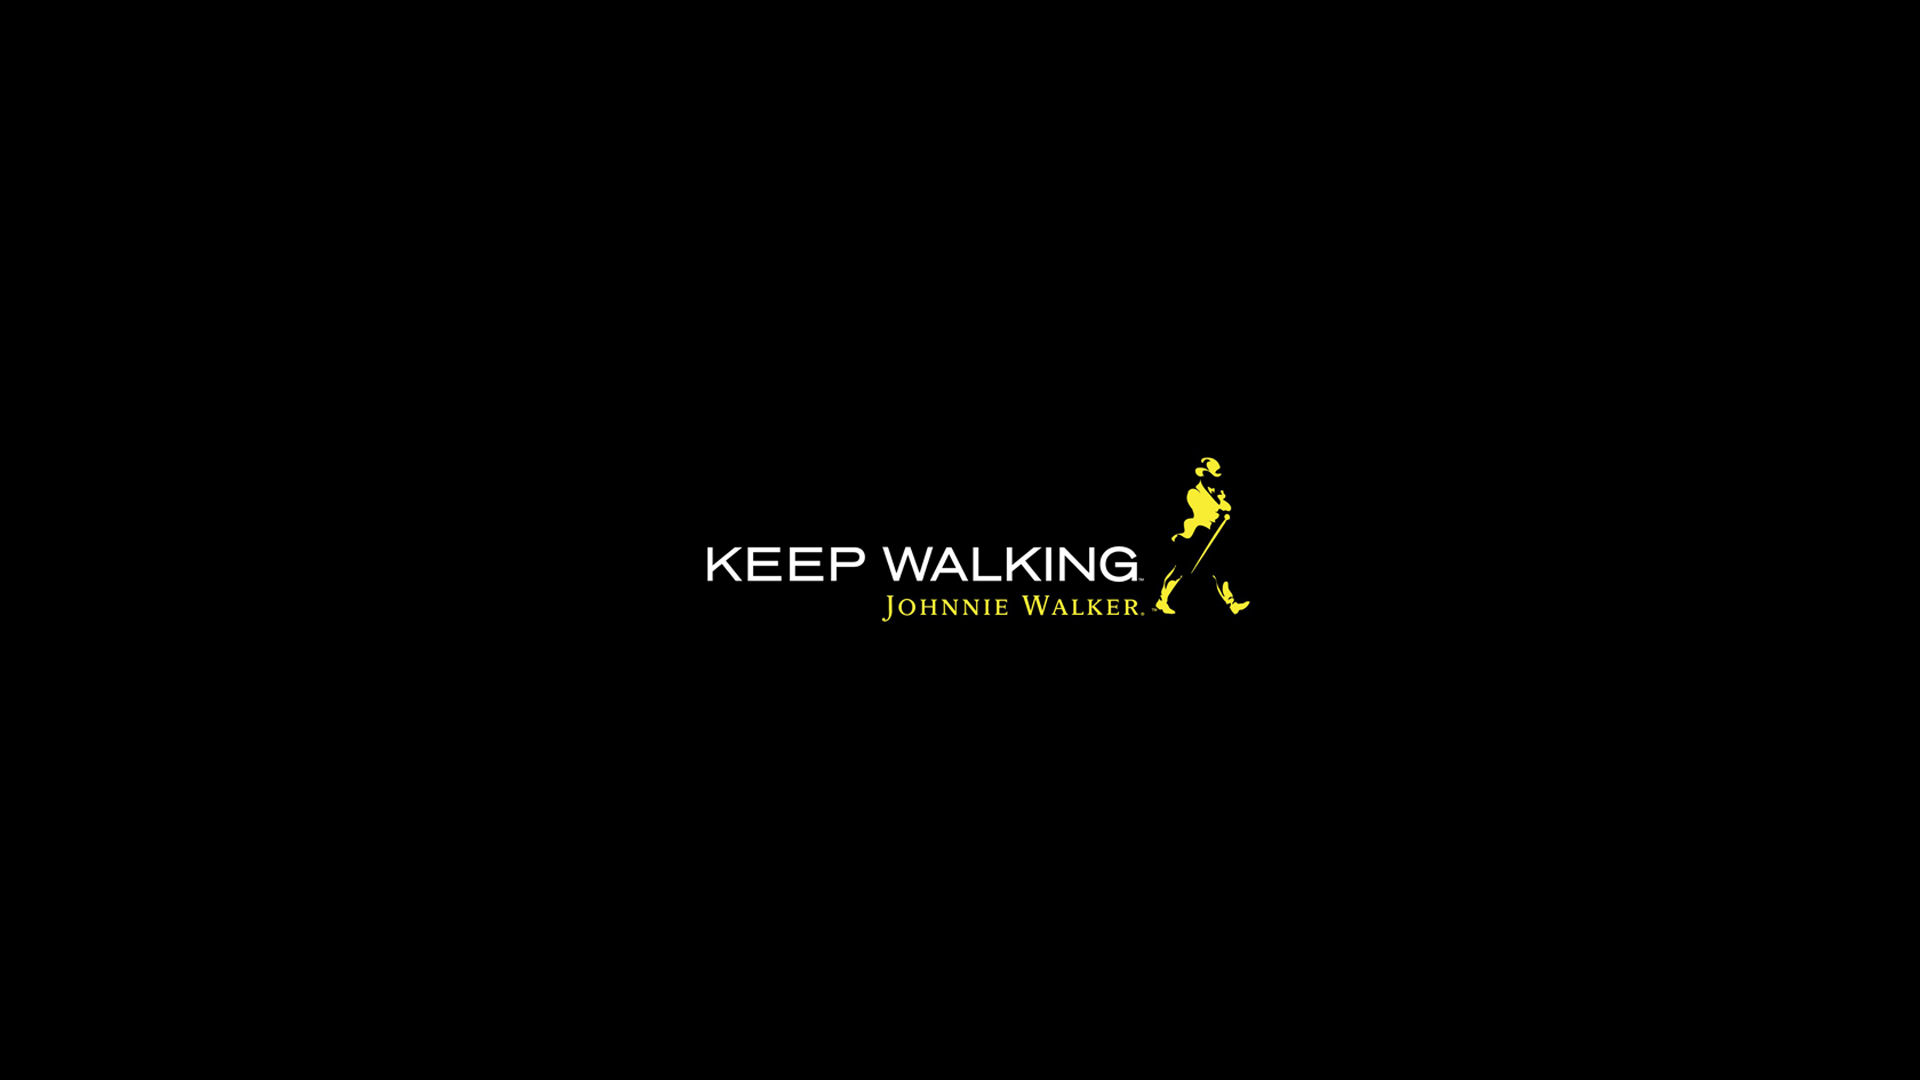 Keep Walking Johnnie Walker Image HD Wallpaper Gallery